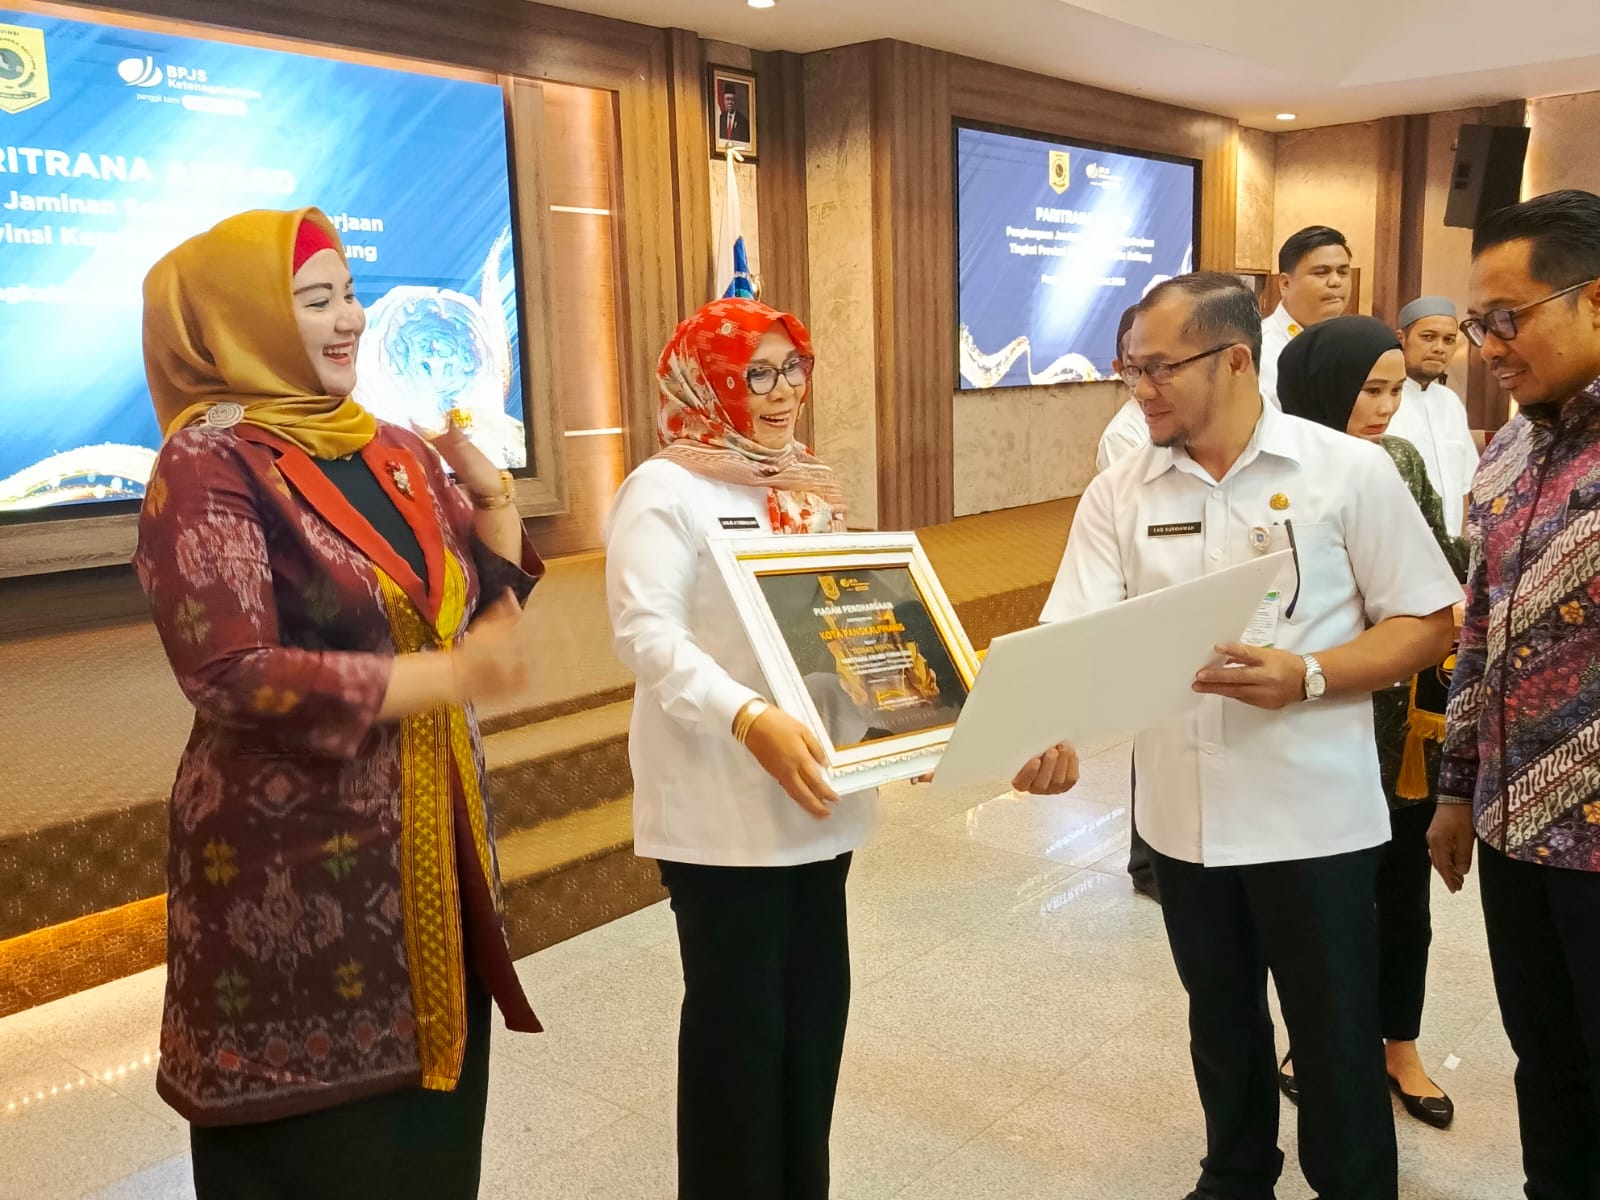 Pemkot Pangkalpinang Terima Penghargaan Terbaik 1 Paritrana Award Tingkat Provinsi Kepulauan Bangka Belitung